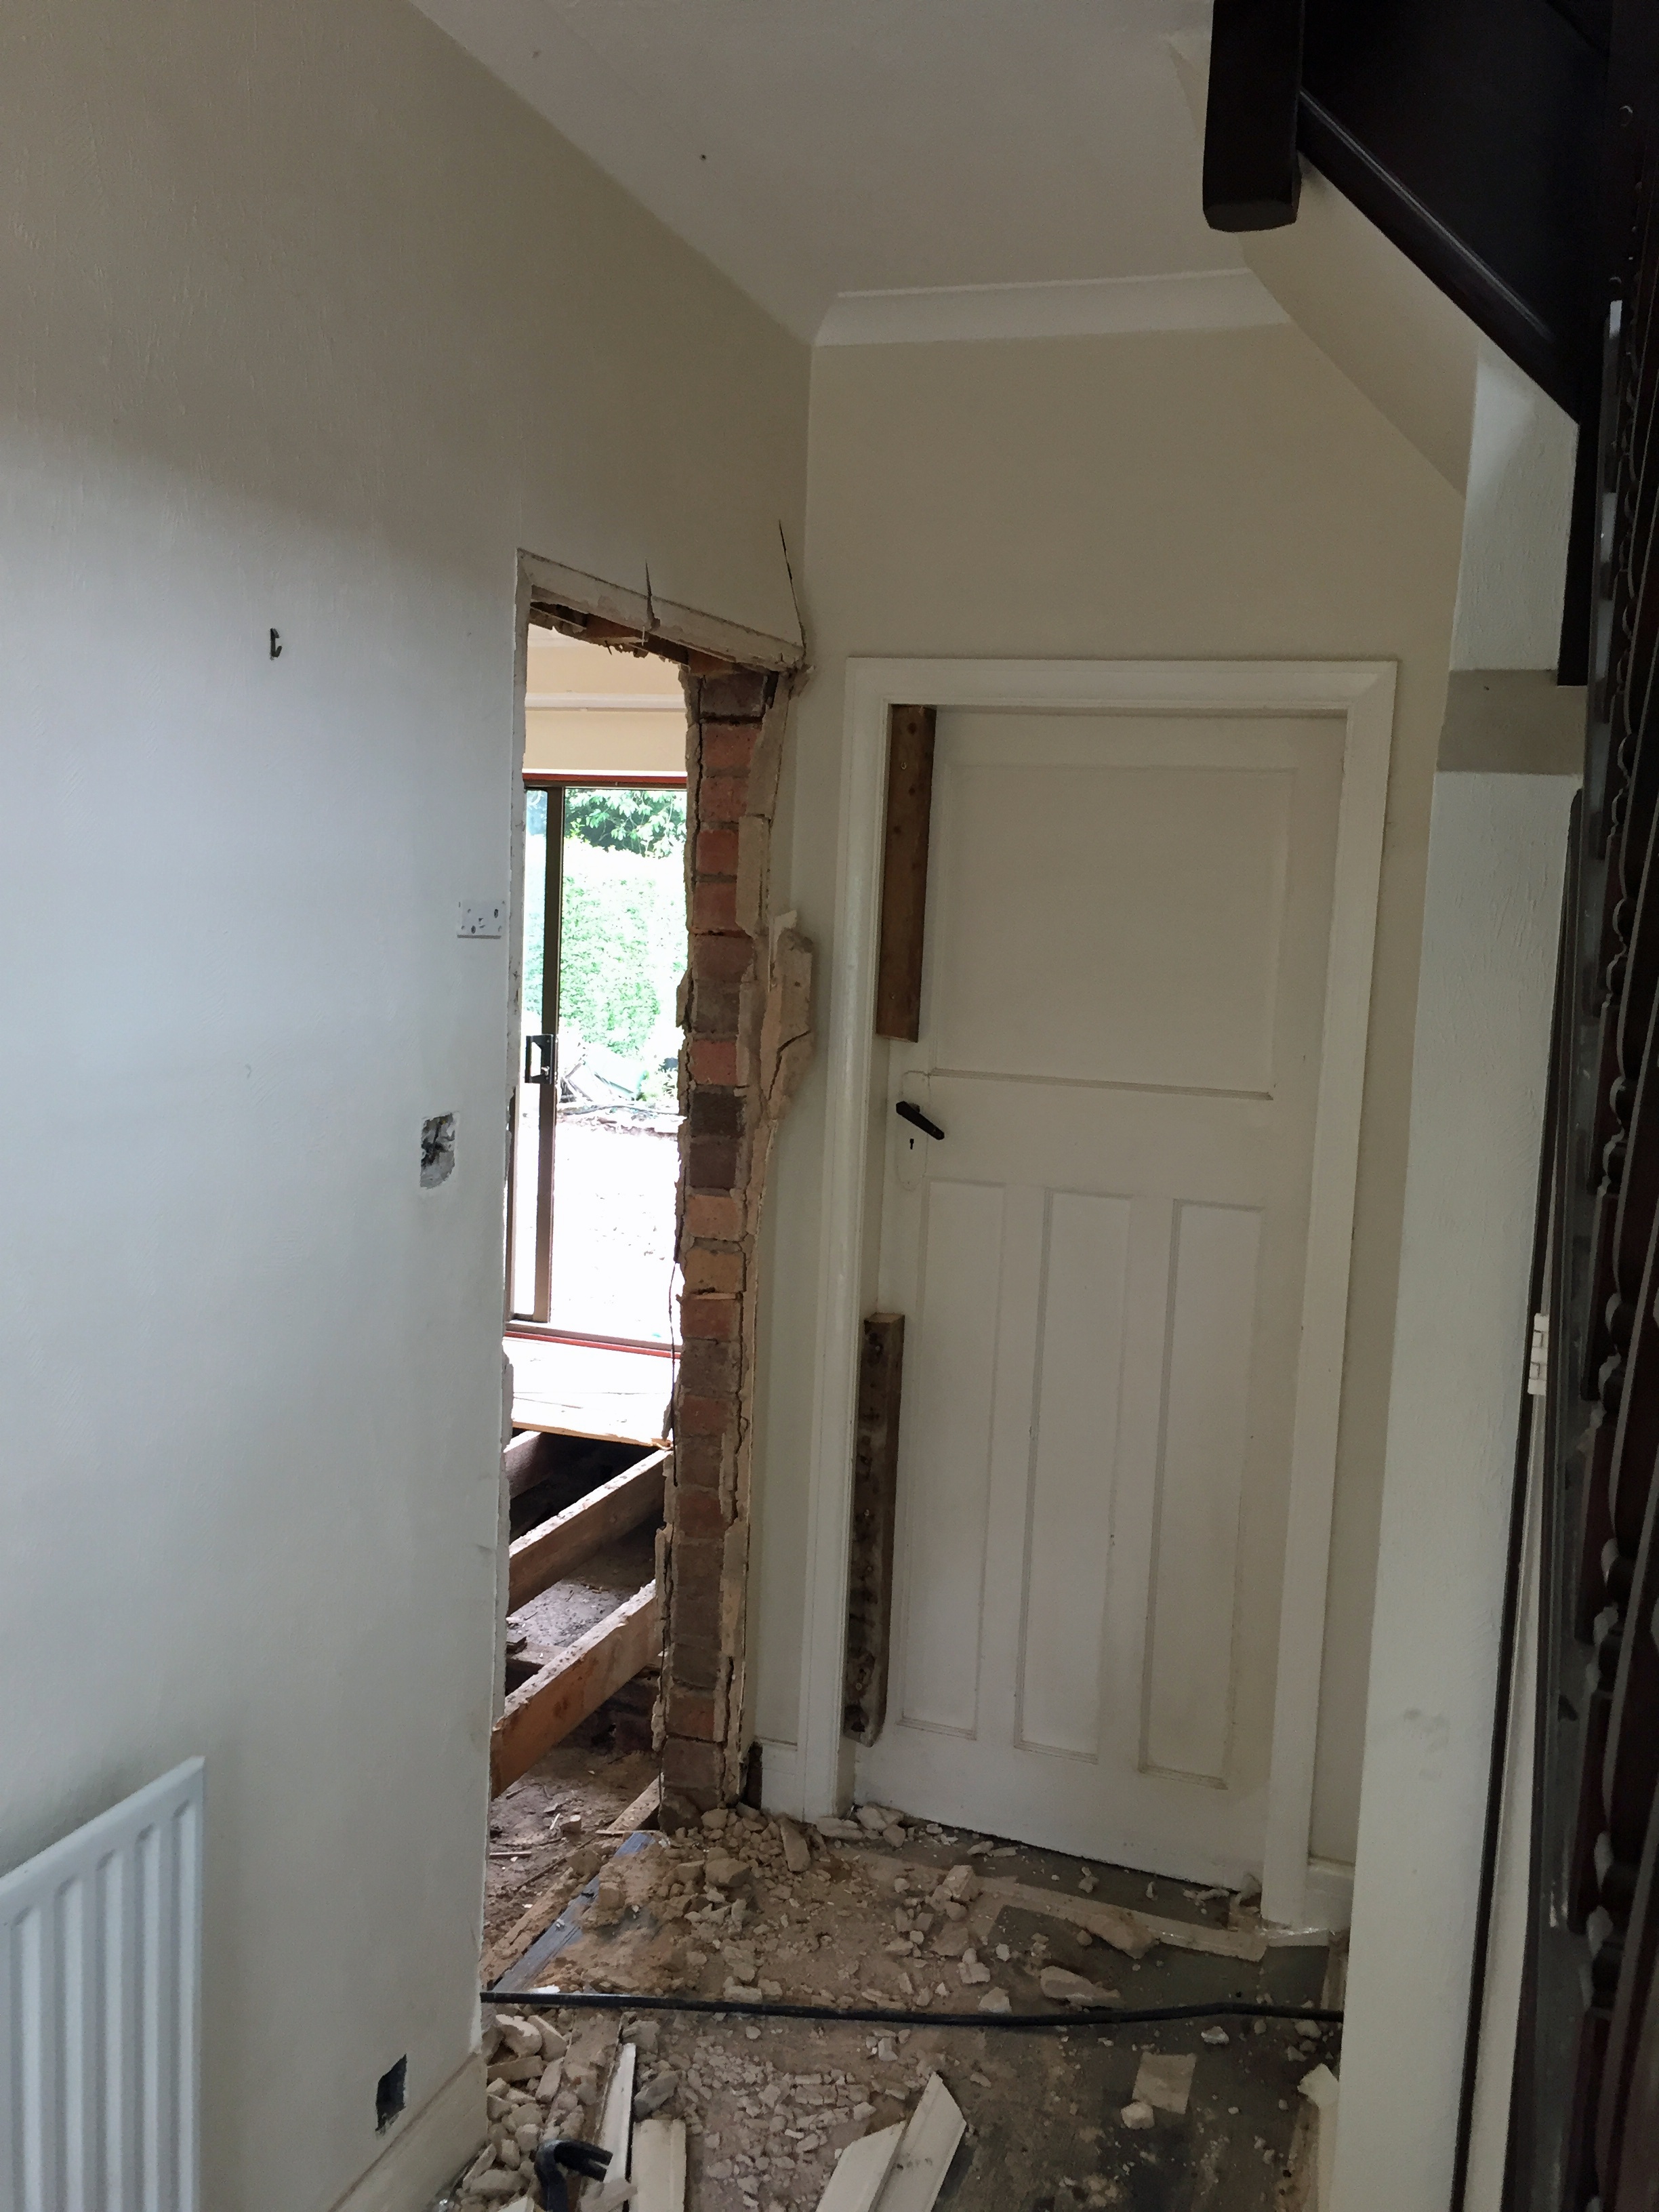 Home Renovation Blog: Demolition Begins